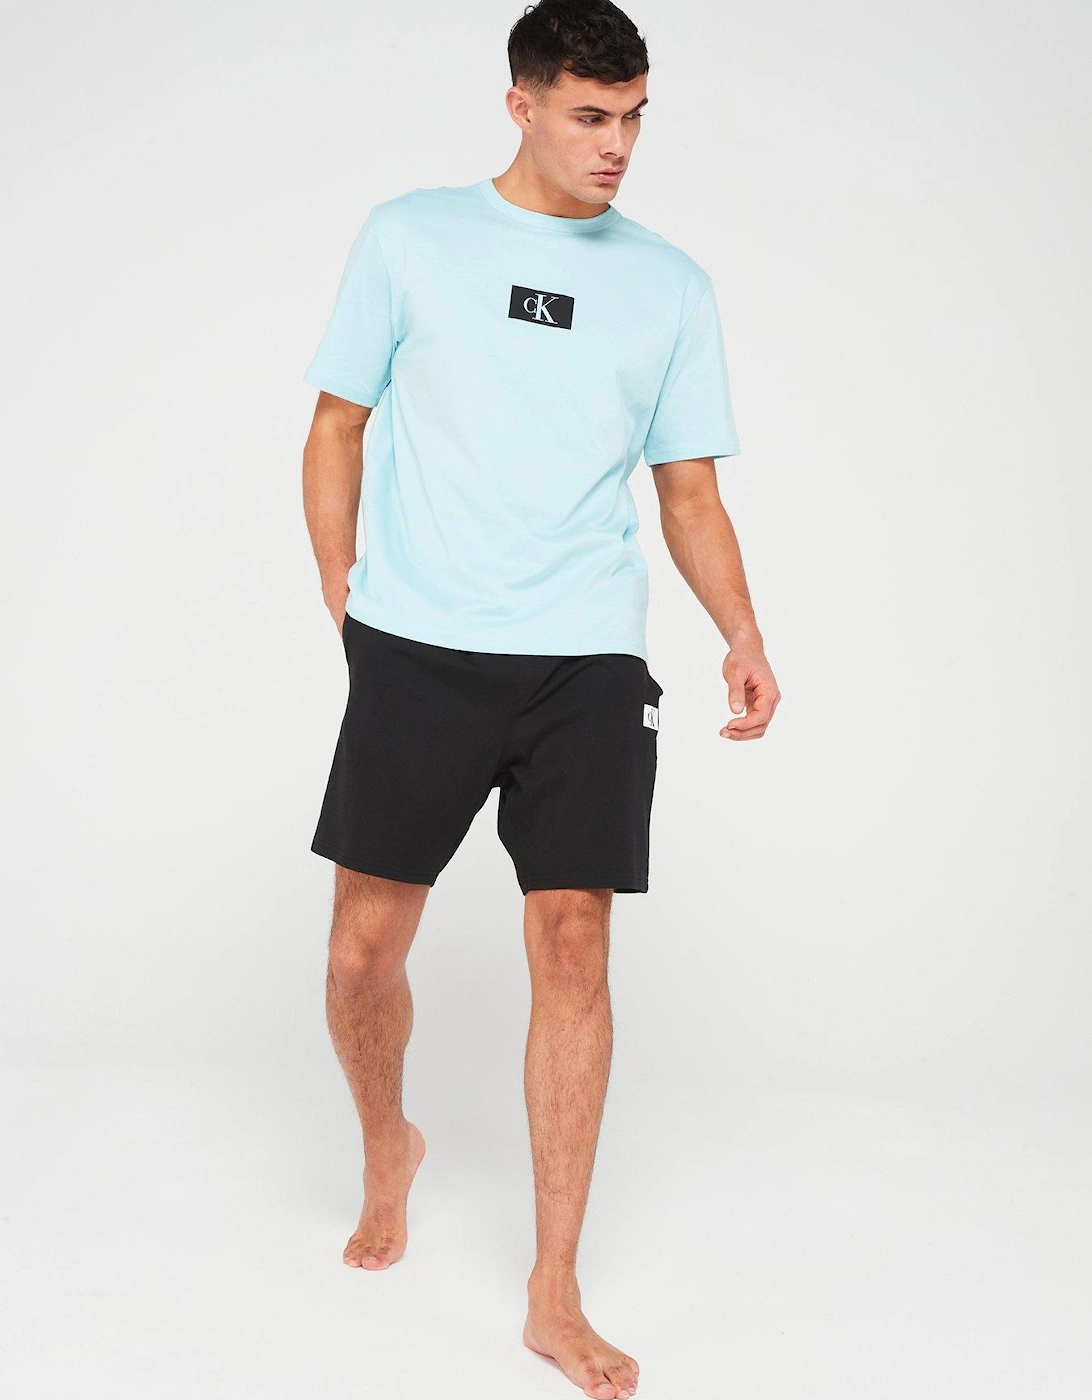 Crew Neck Loungewear T-Shirt - Light Blue